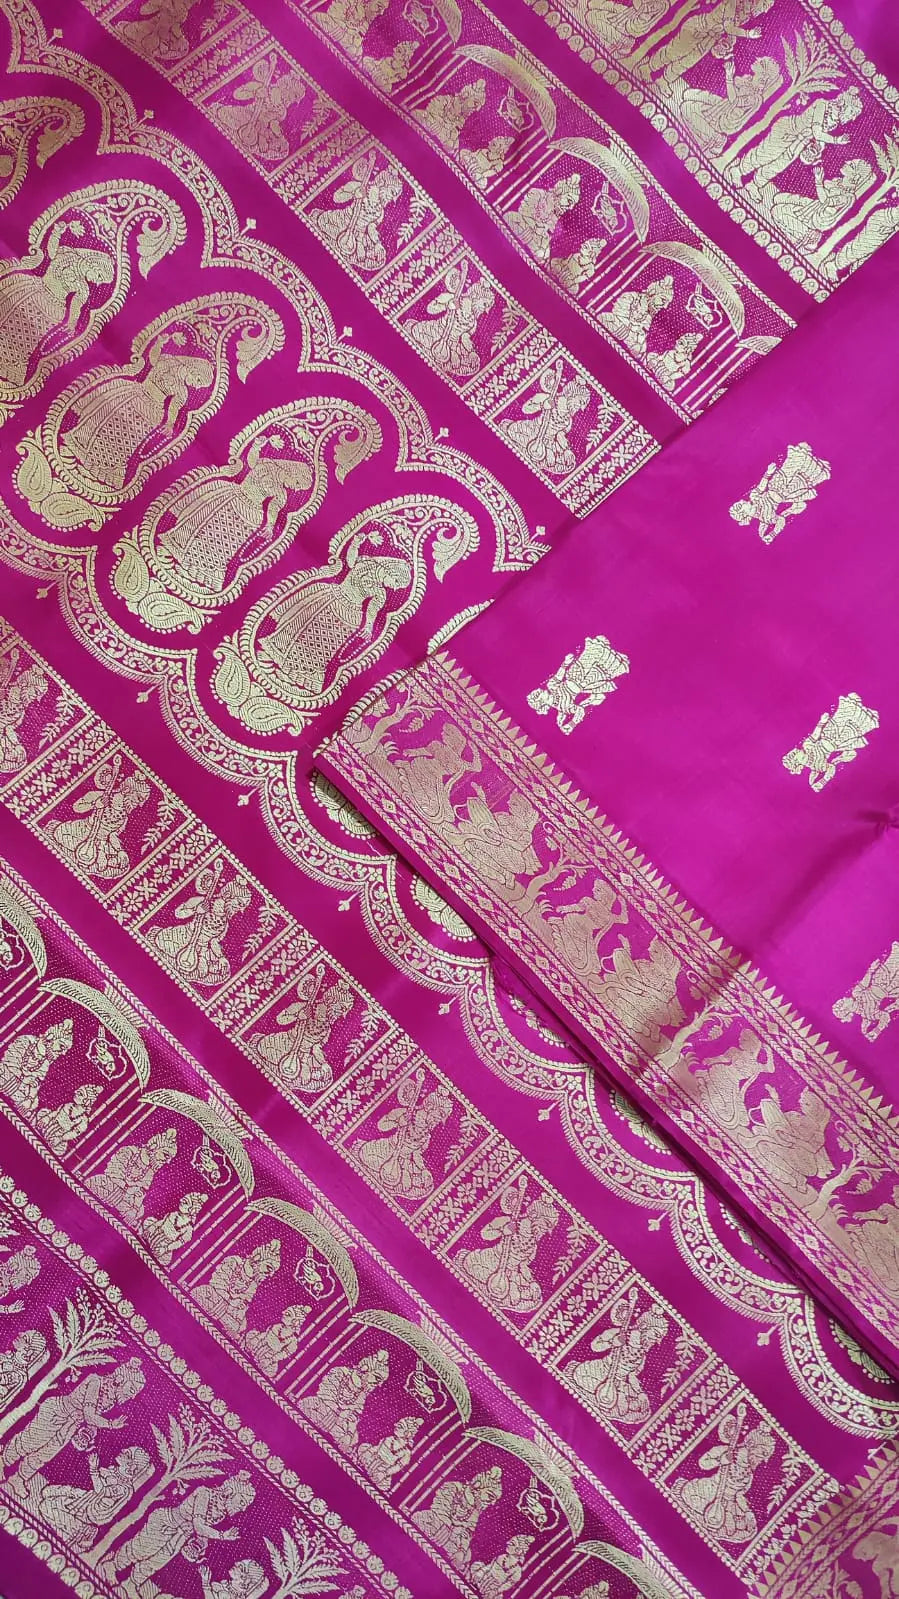 Baluchari silk saree of Bengal Original Saree Putul's fashion